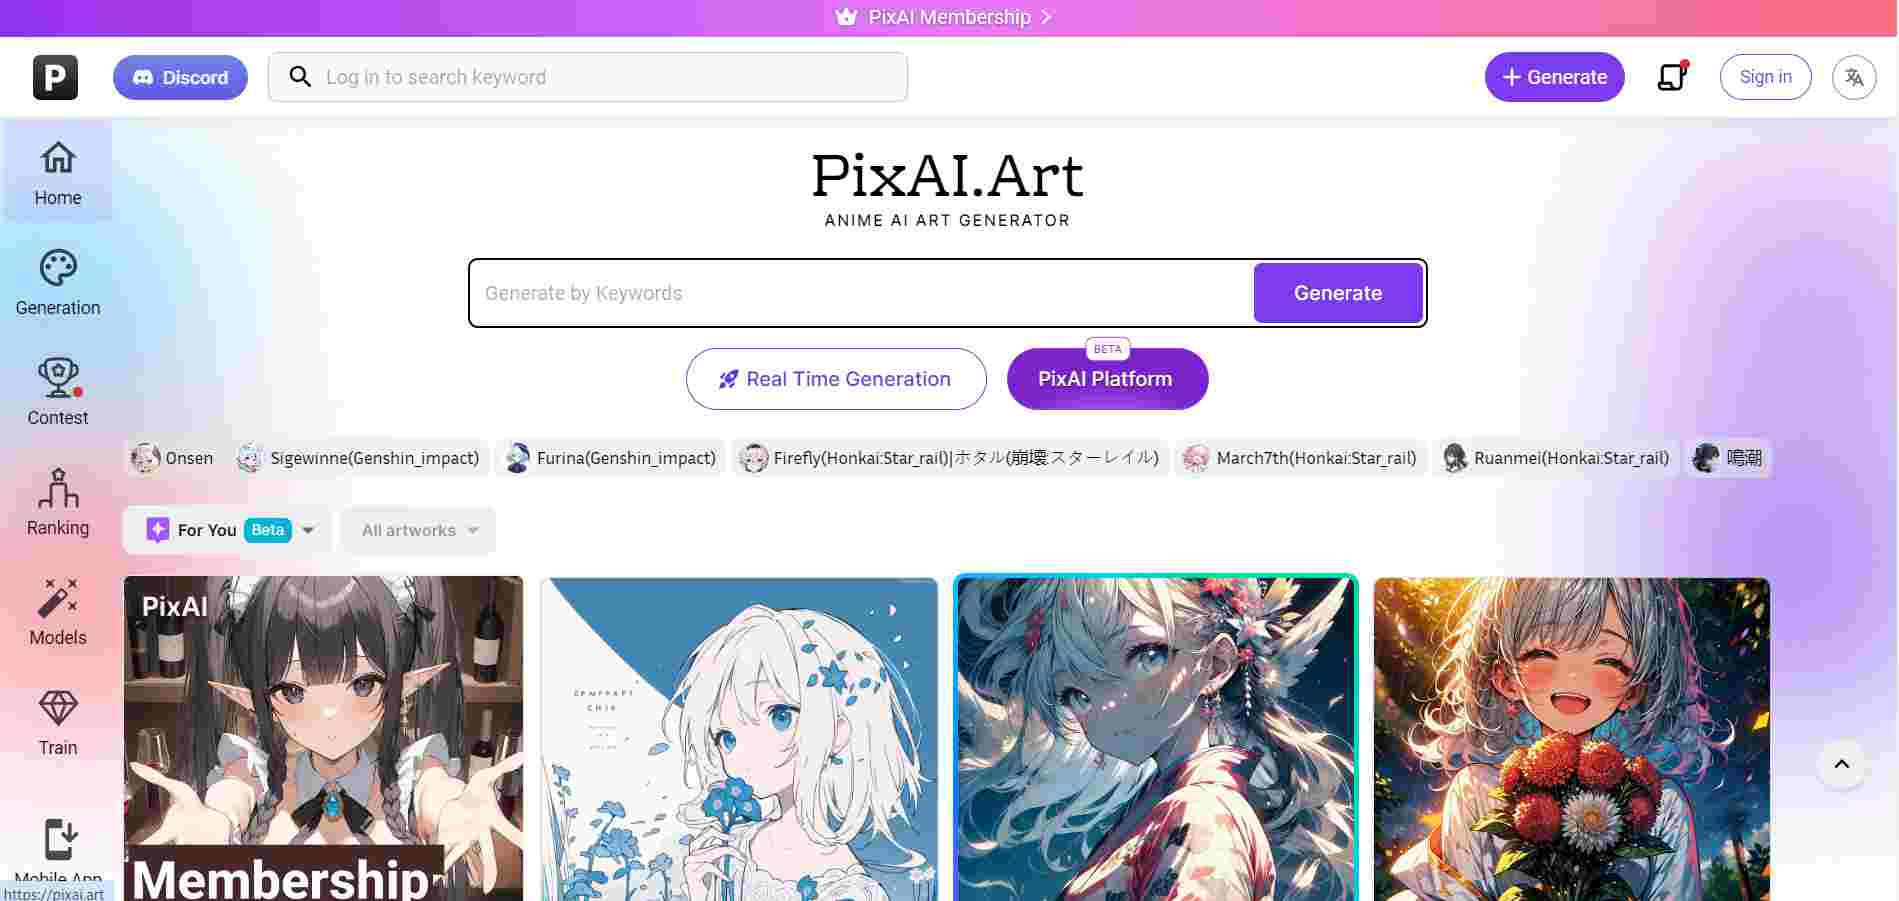  pixai.art-Startseite mit verschiedenen Anime-Kunstwerken und Suchleiste 